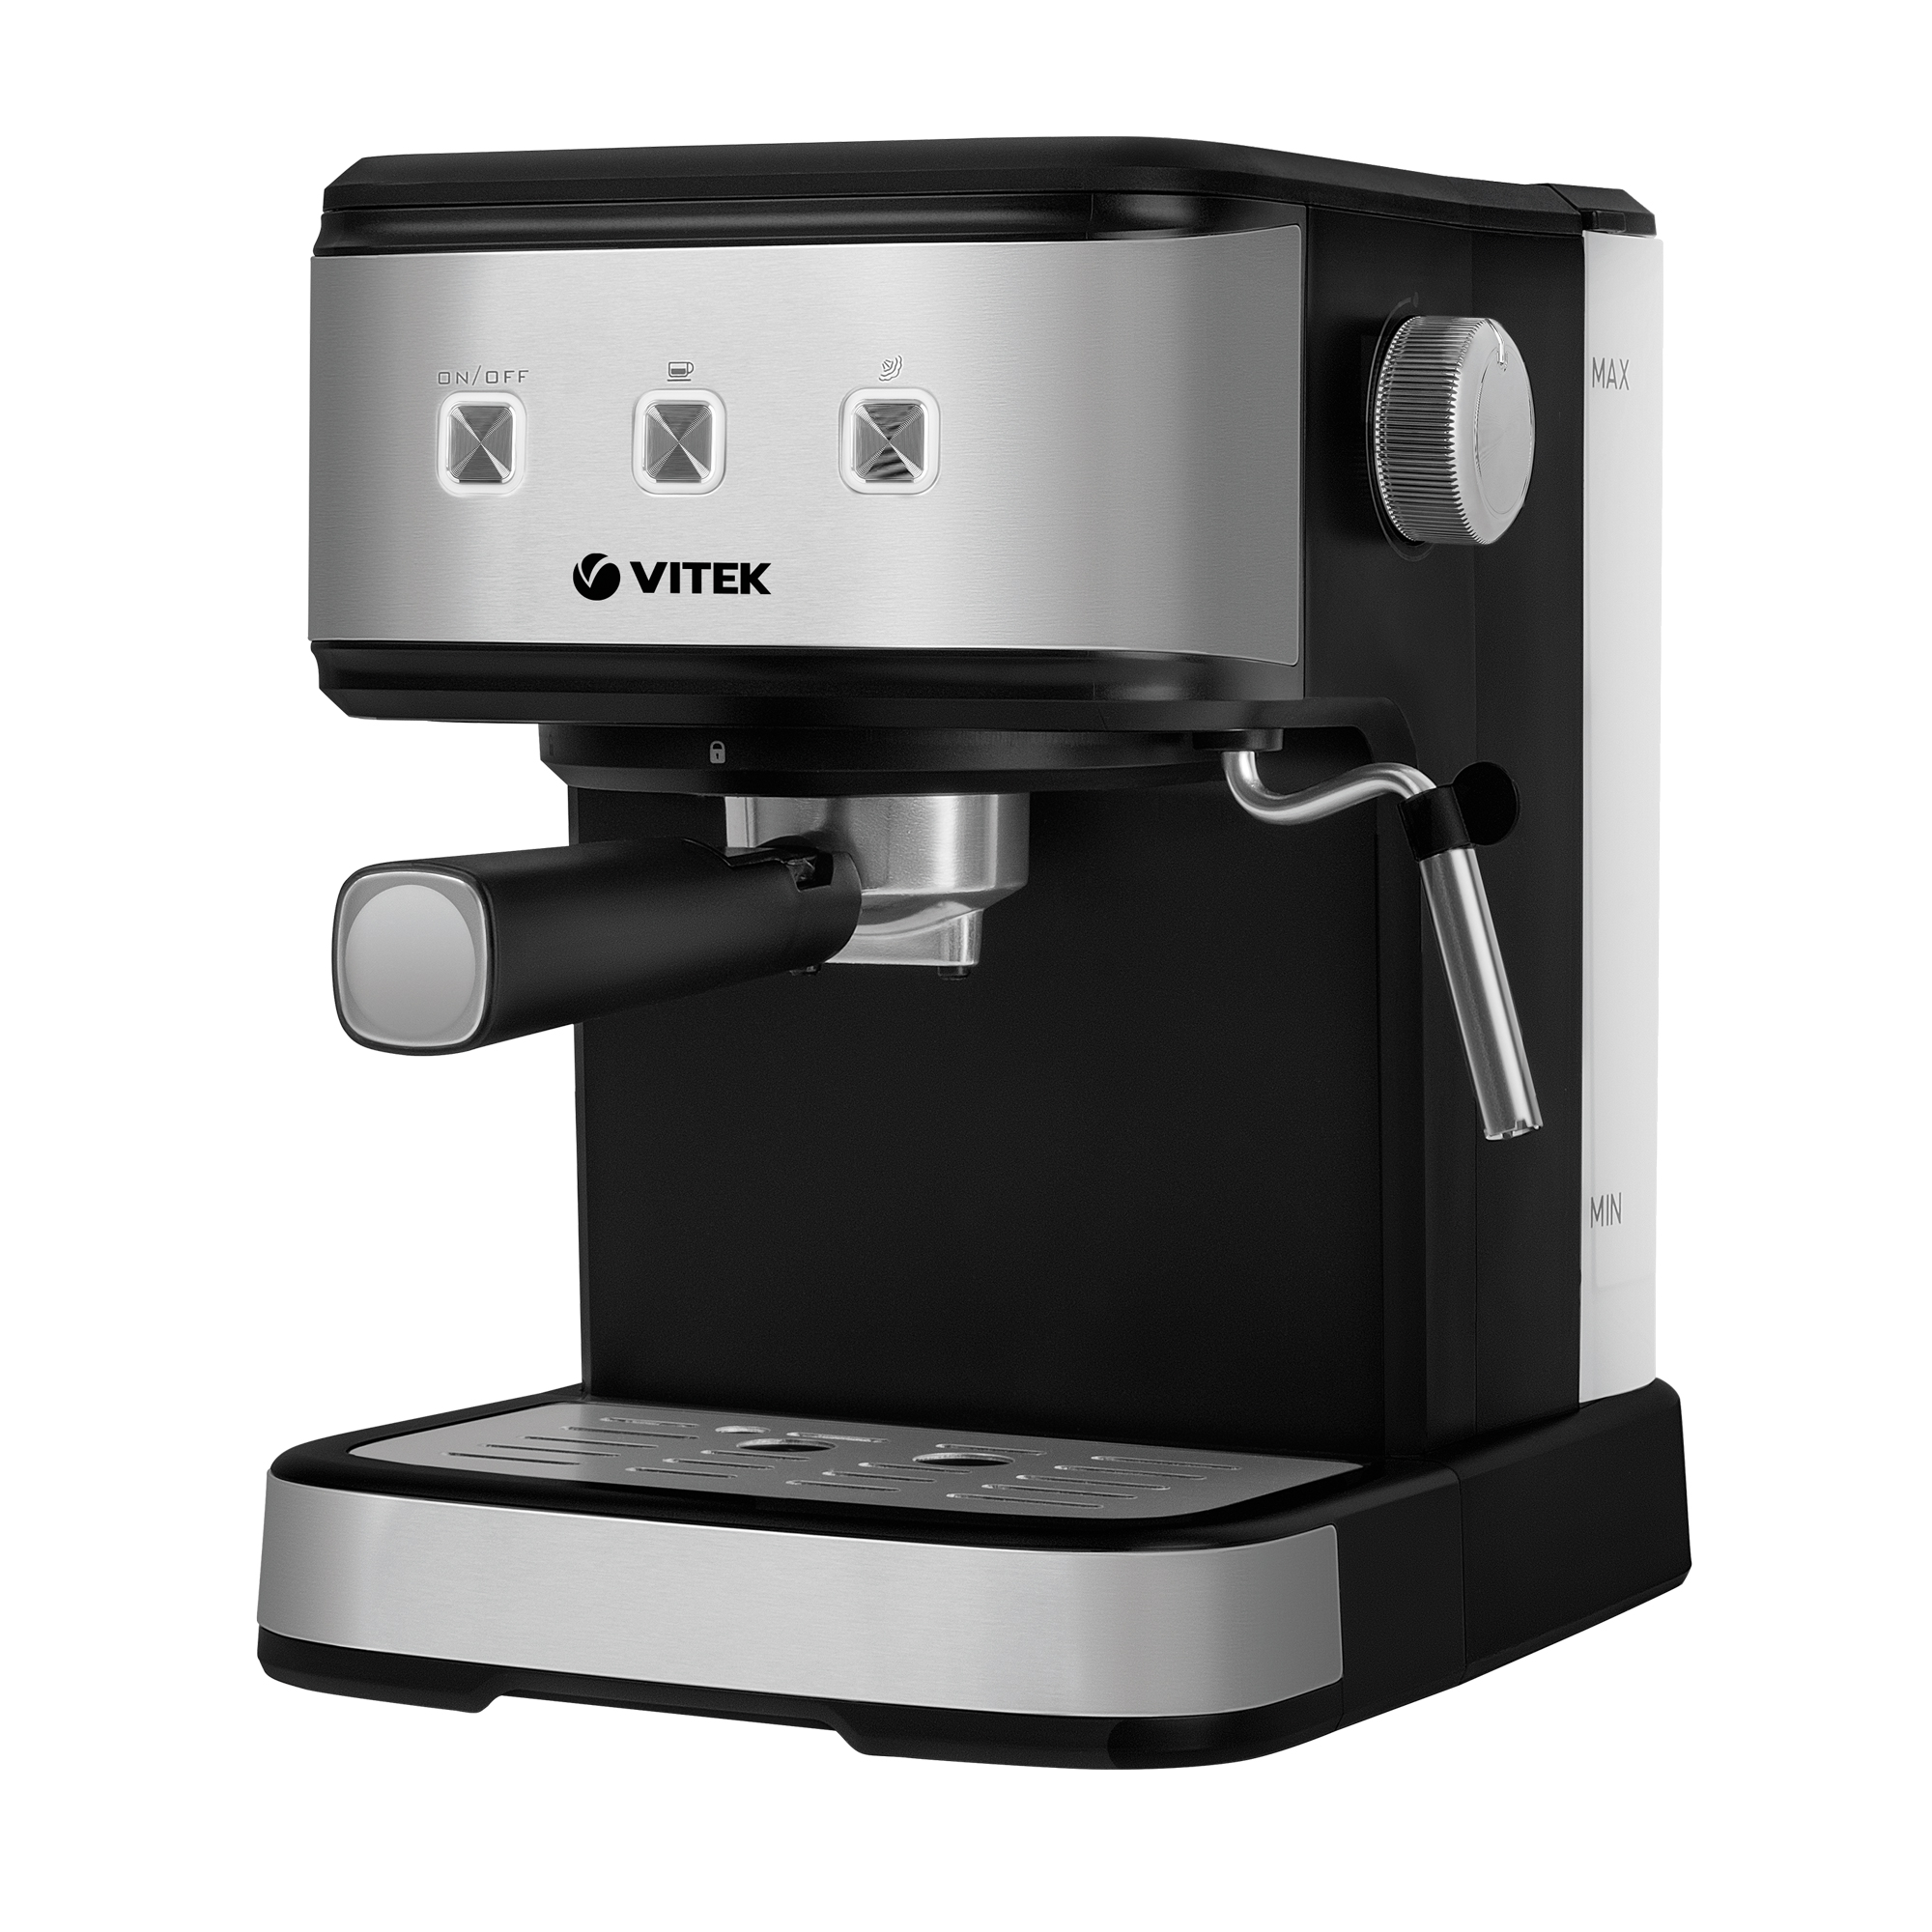 Рожковая кофеварка VITEK VT-8471 серый, черный рожковая кофеварка vitek vt 1509 серый